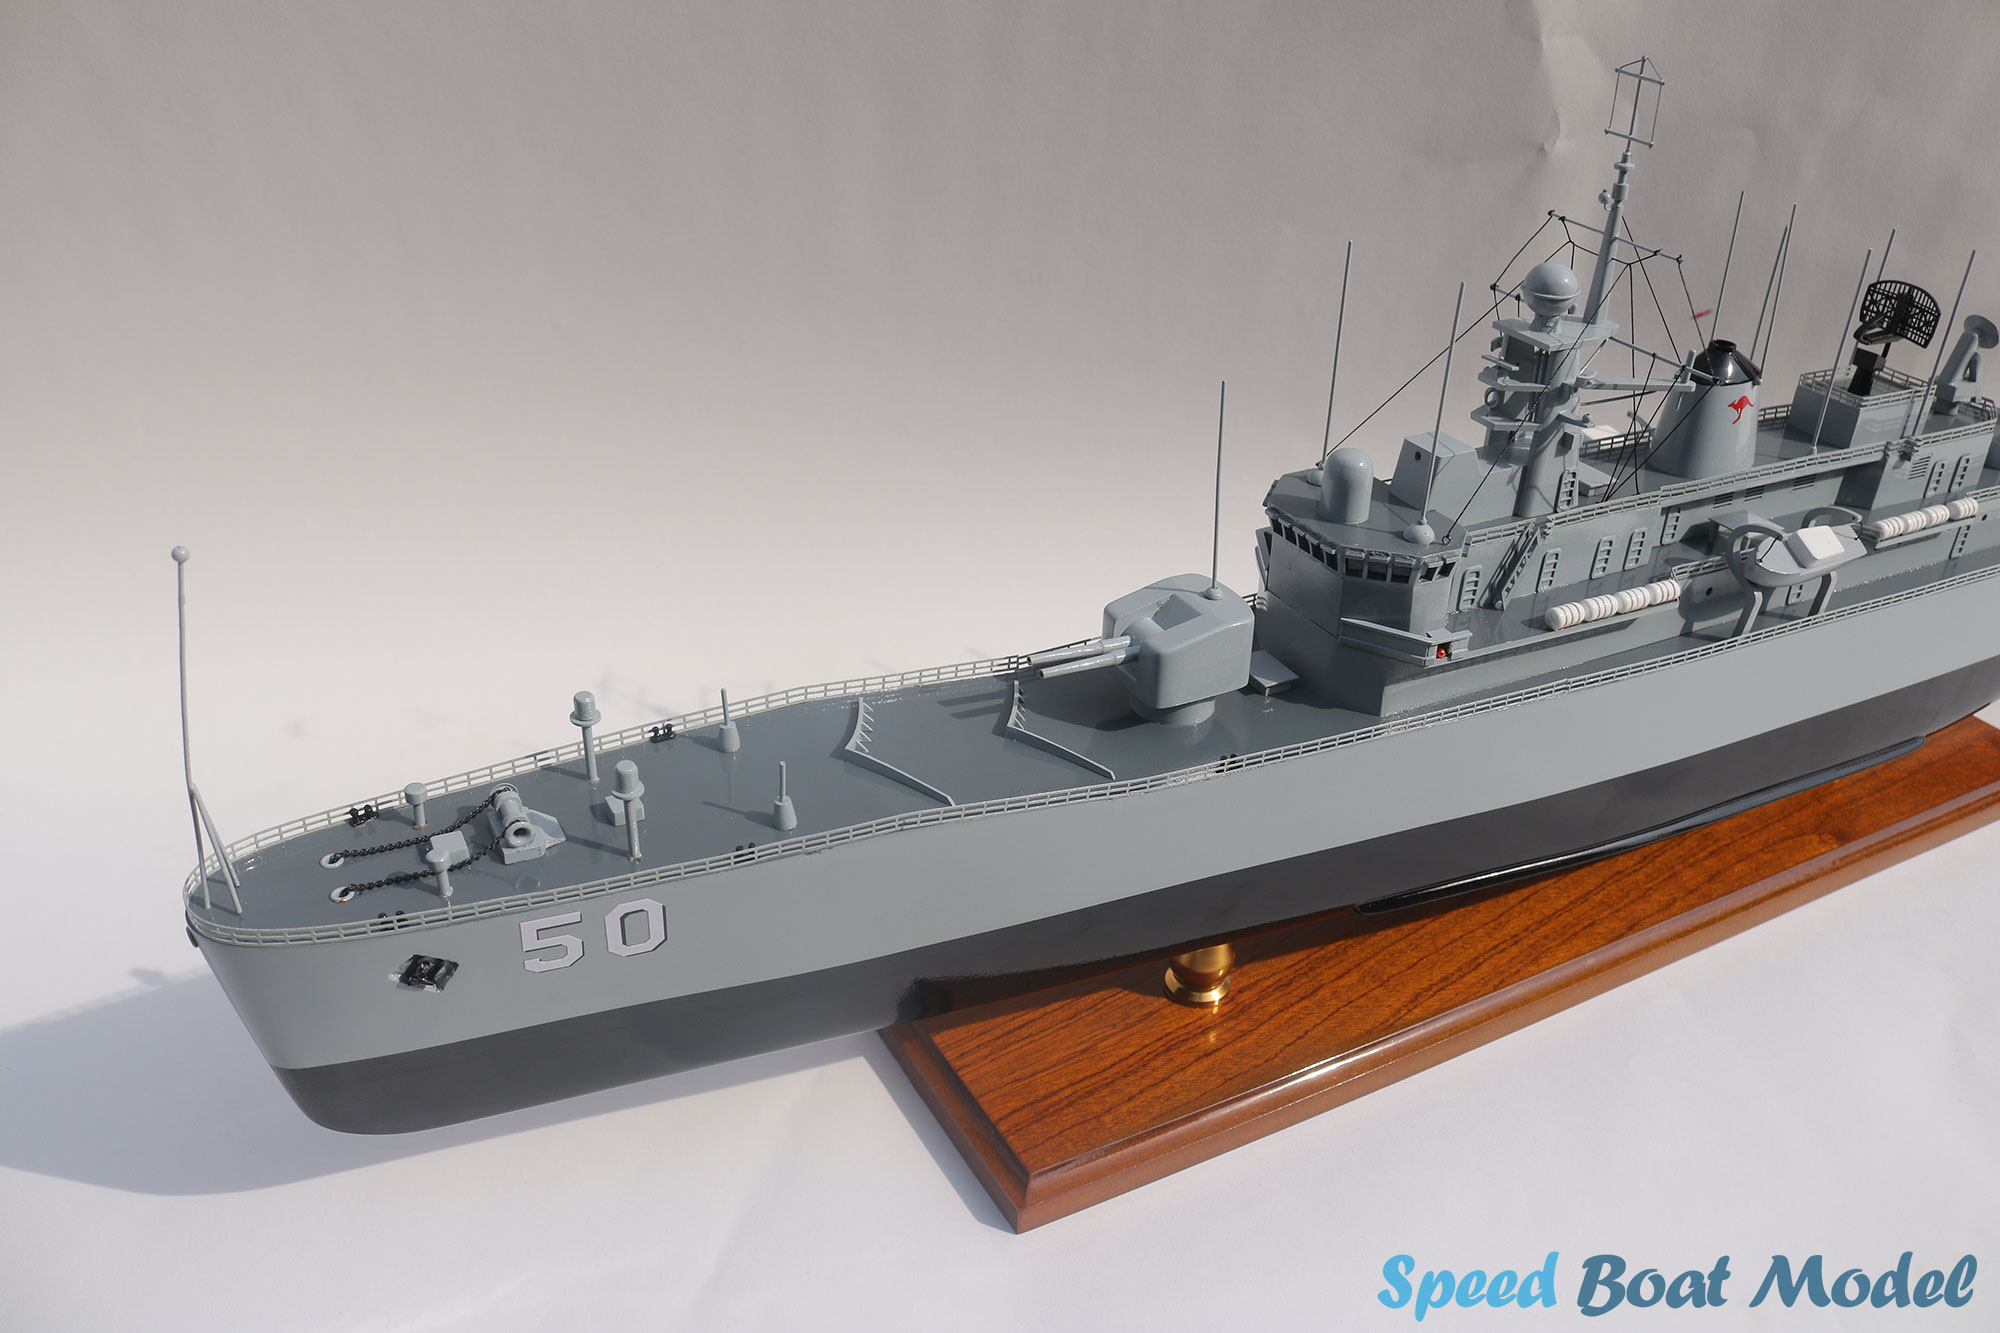 Hmas Swan (III) Battleship Model 39.3"